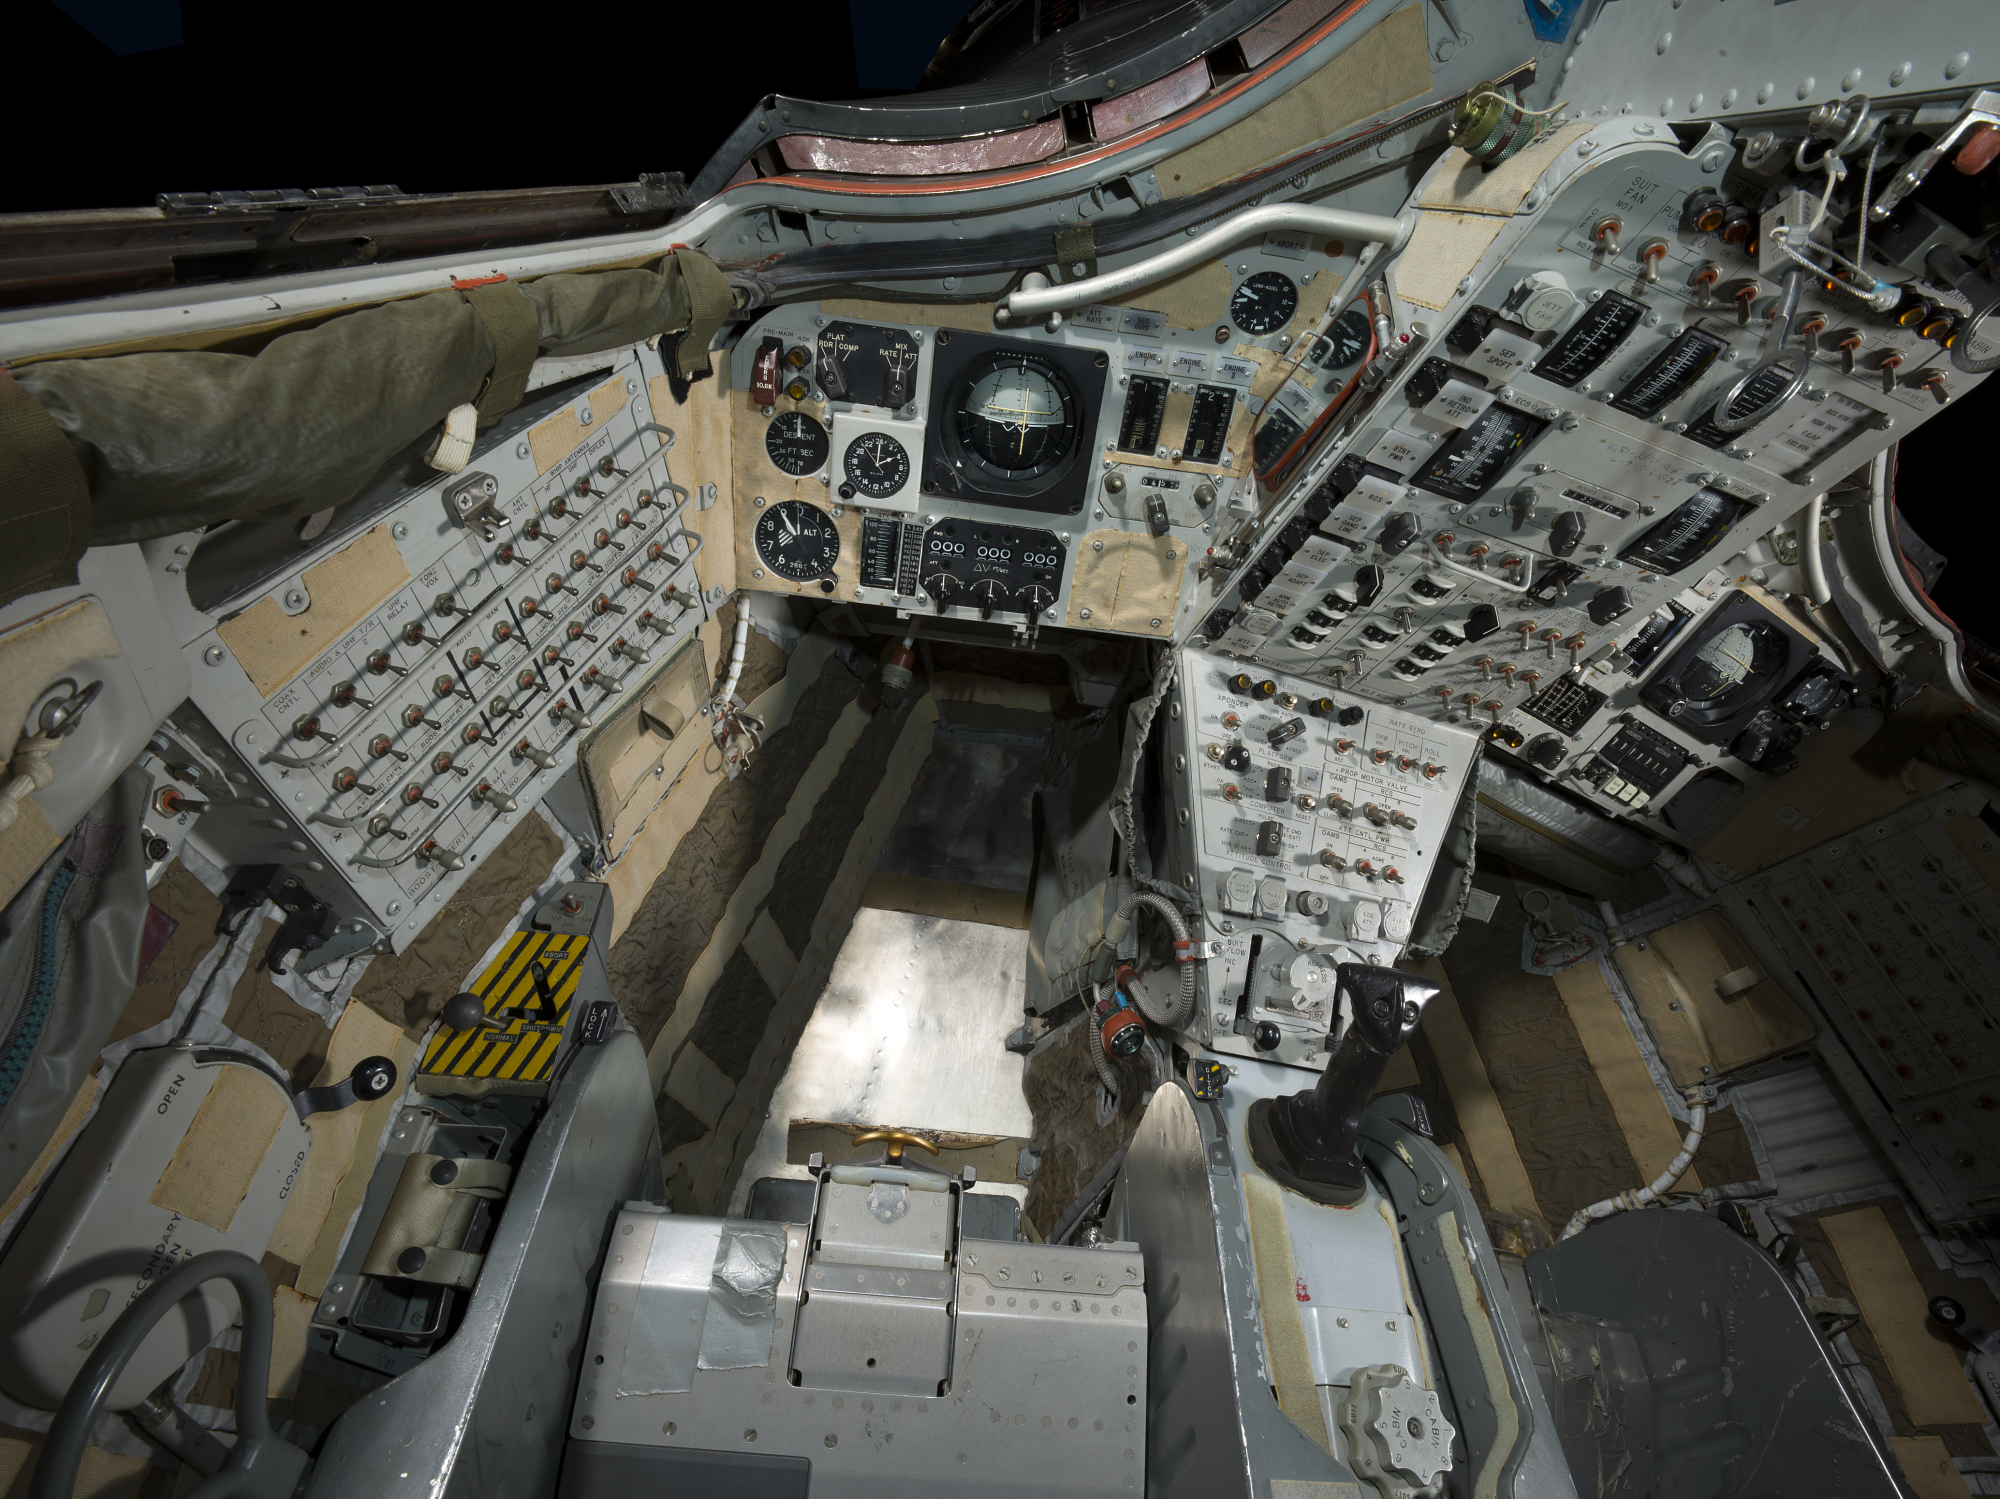 gemini spacecraft interior